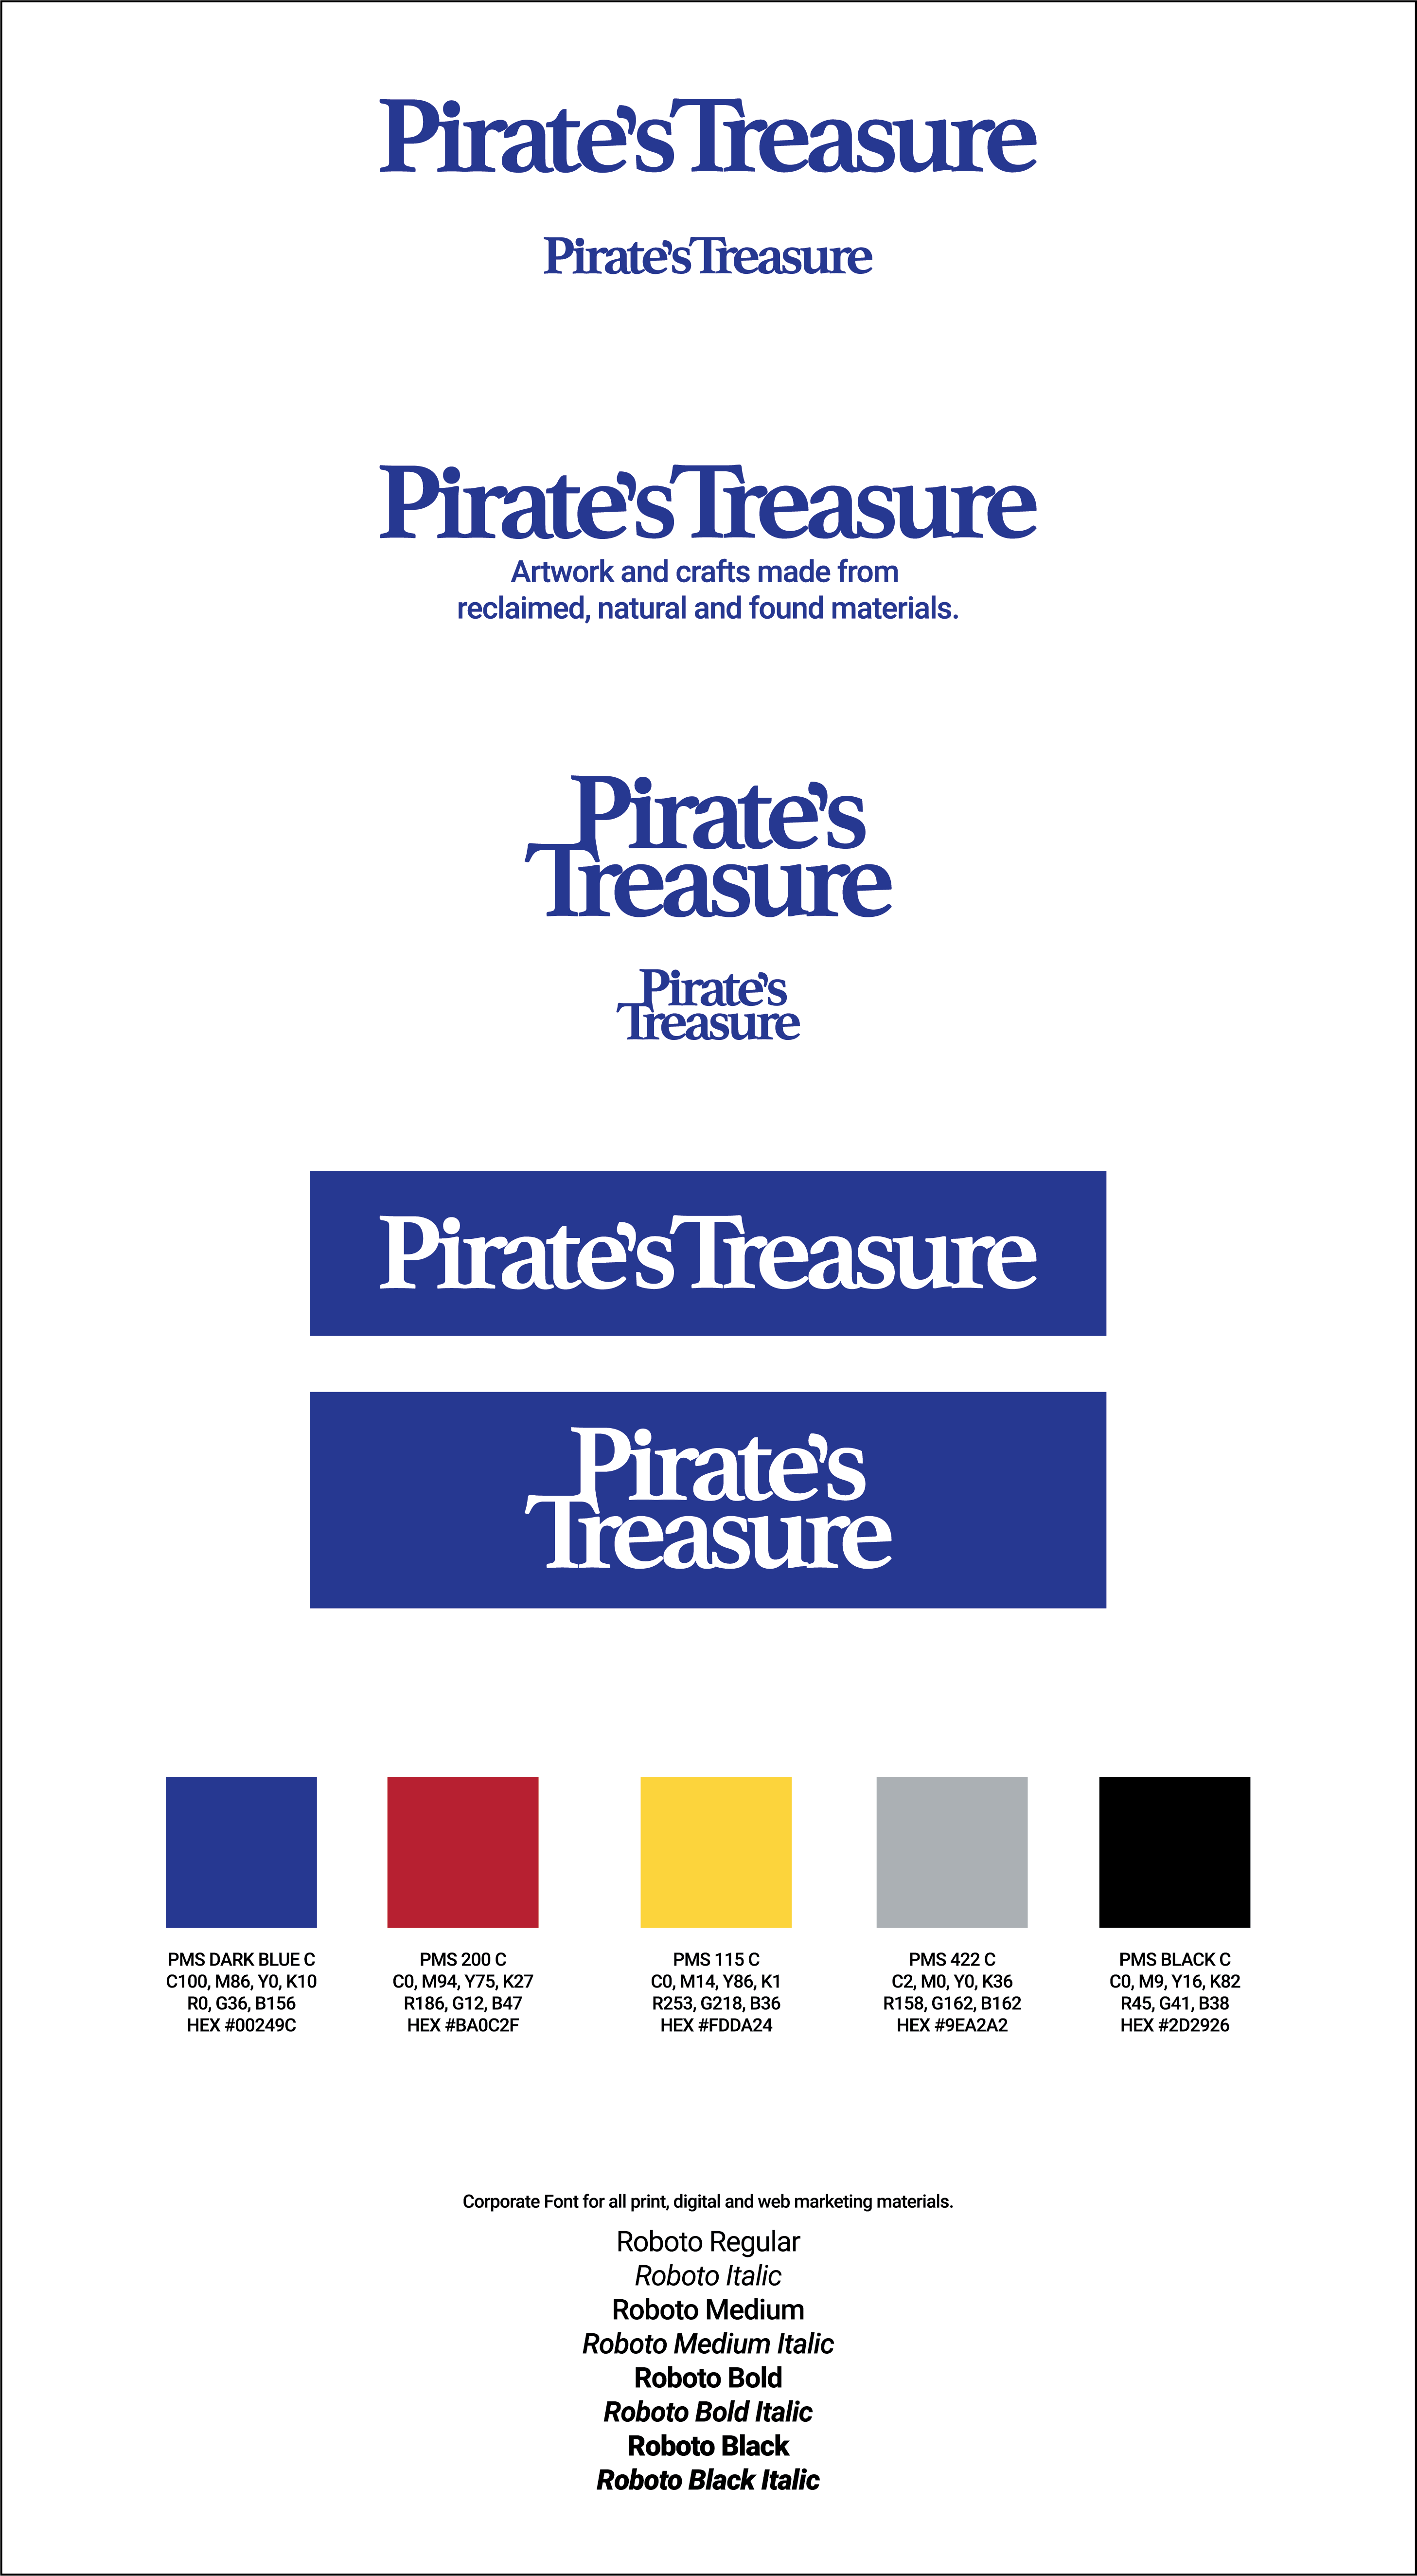 Pirate's Treasure Logotype and Branding